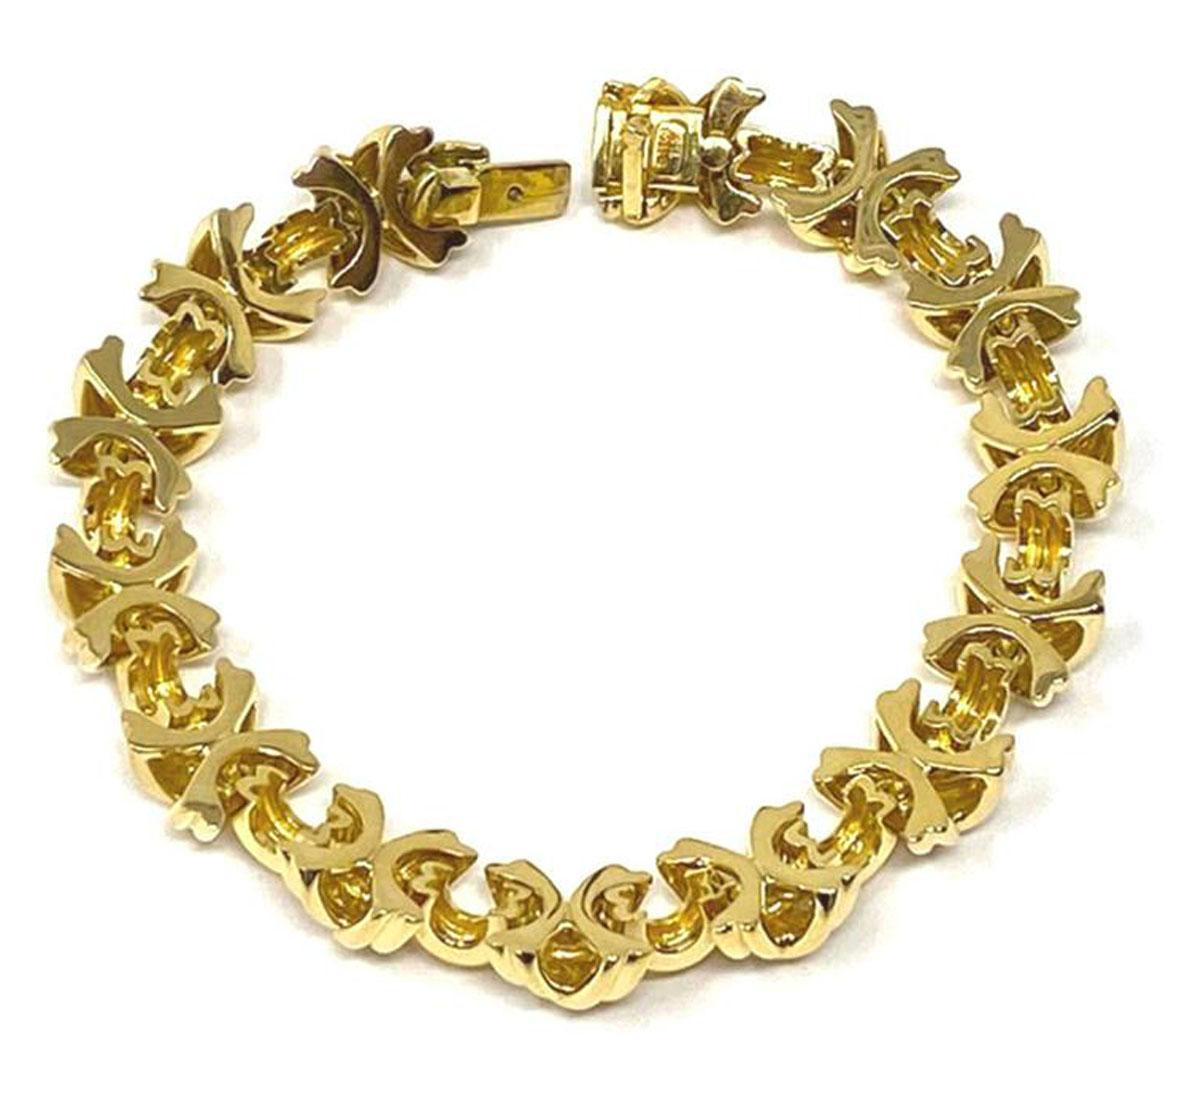 Il s'agit d'un magnifique bracelet authentique de Tiffany & S. de la collection Signature X link. Il est réalisé en or jaune 18 carats avec une finition polie. Les maillons en X rainurés sont reliés entre eux par une petite barre incurvée et le tout